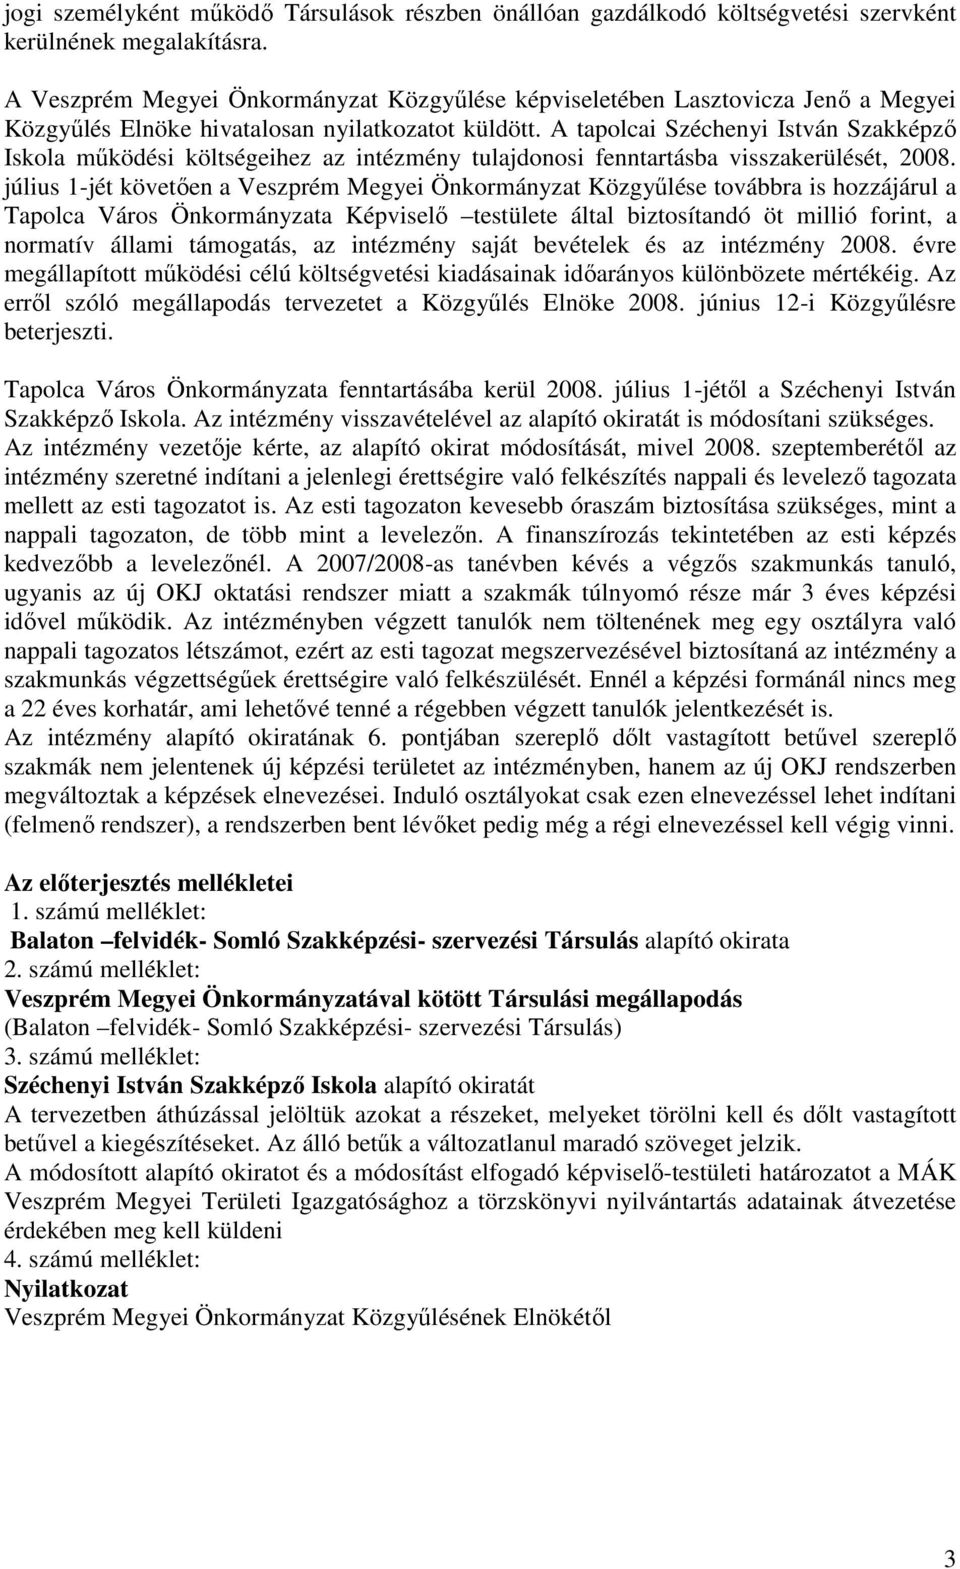 A tapolcai Széchenyi István Szakképző Iskola működési költségeihez az intézmény tulajdonosi fenntartásba visszakerülését, 2008.